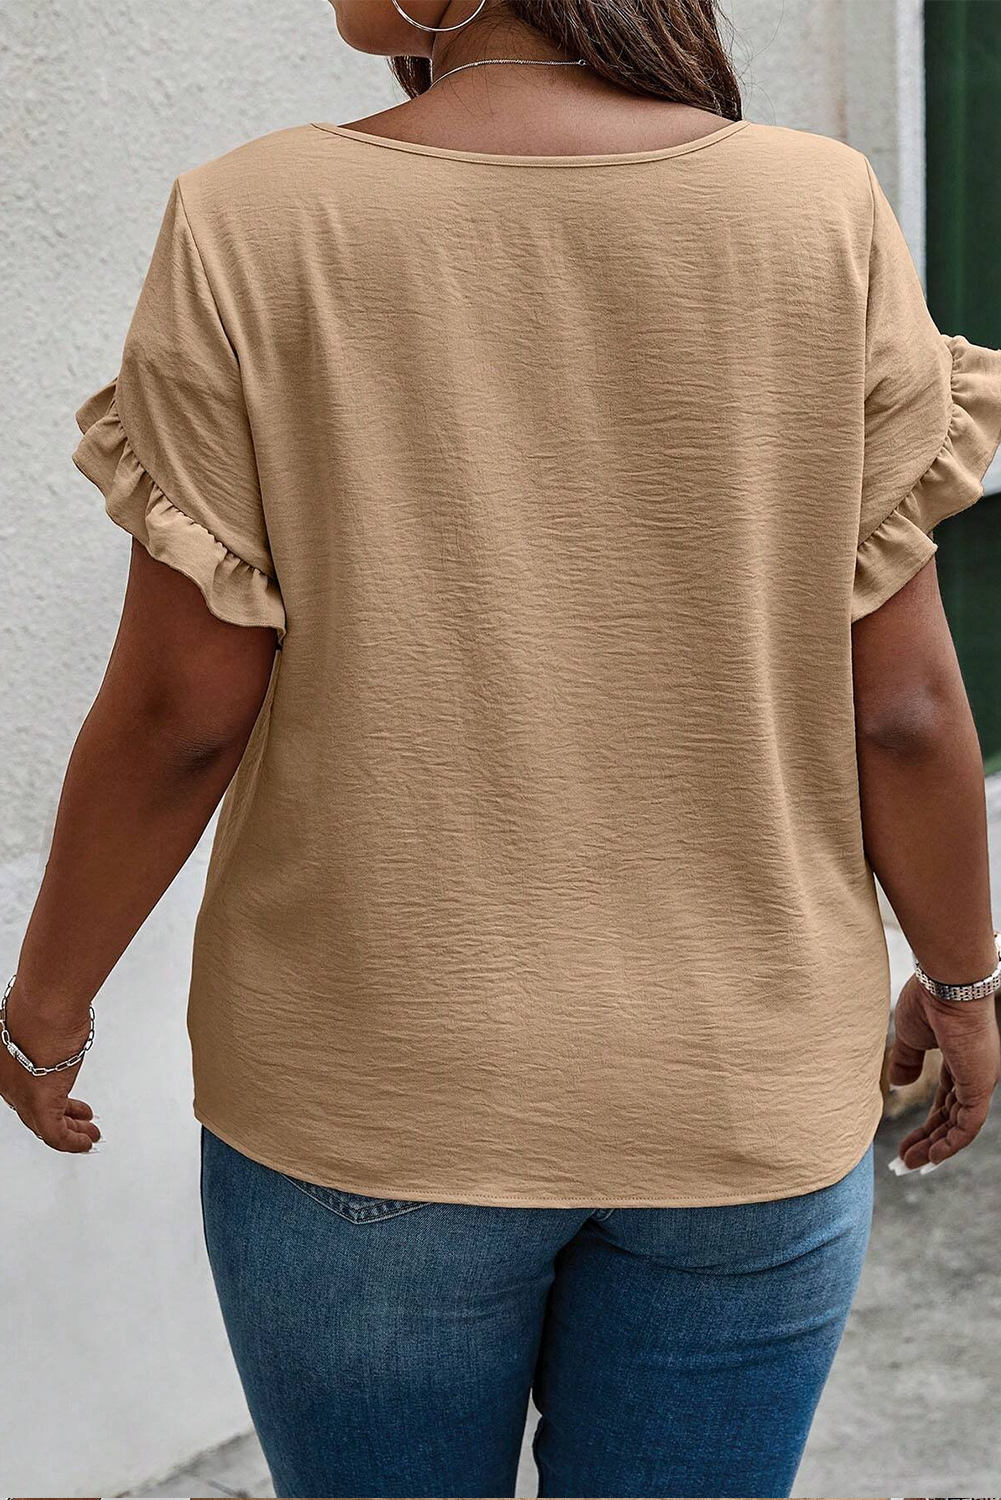 Svijetlo francuska bež majica s naborima, kratkih rukava i veće veličine